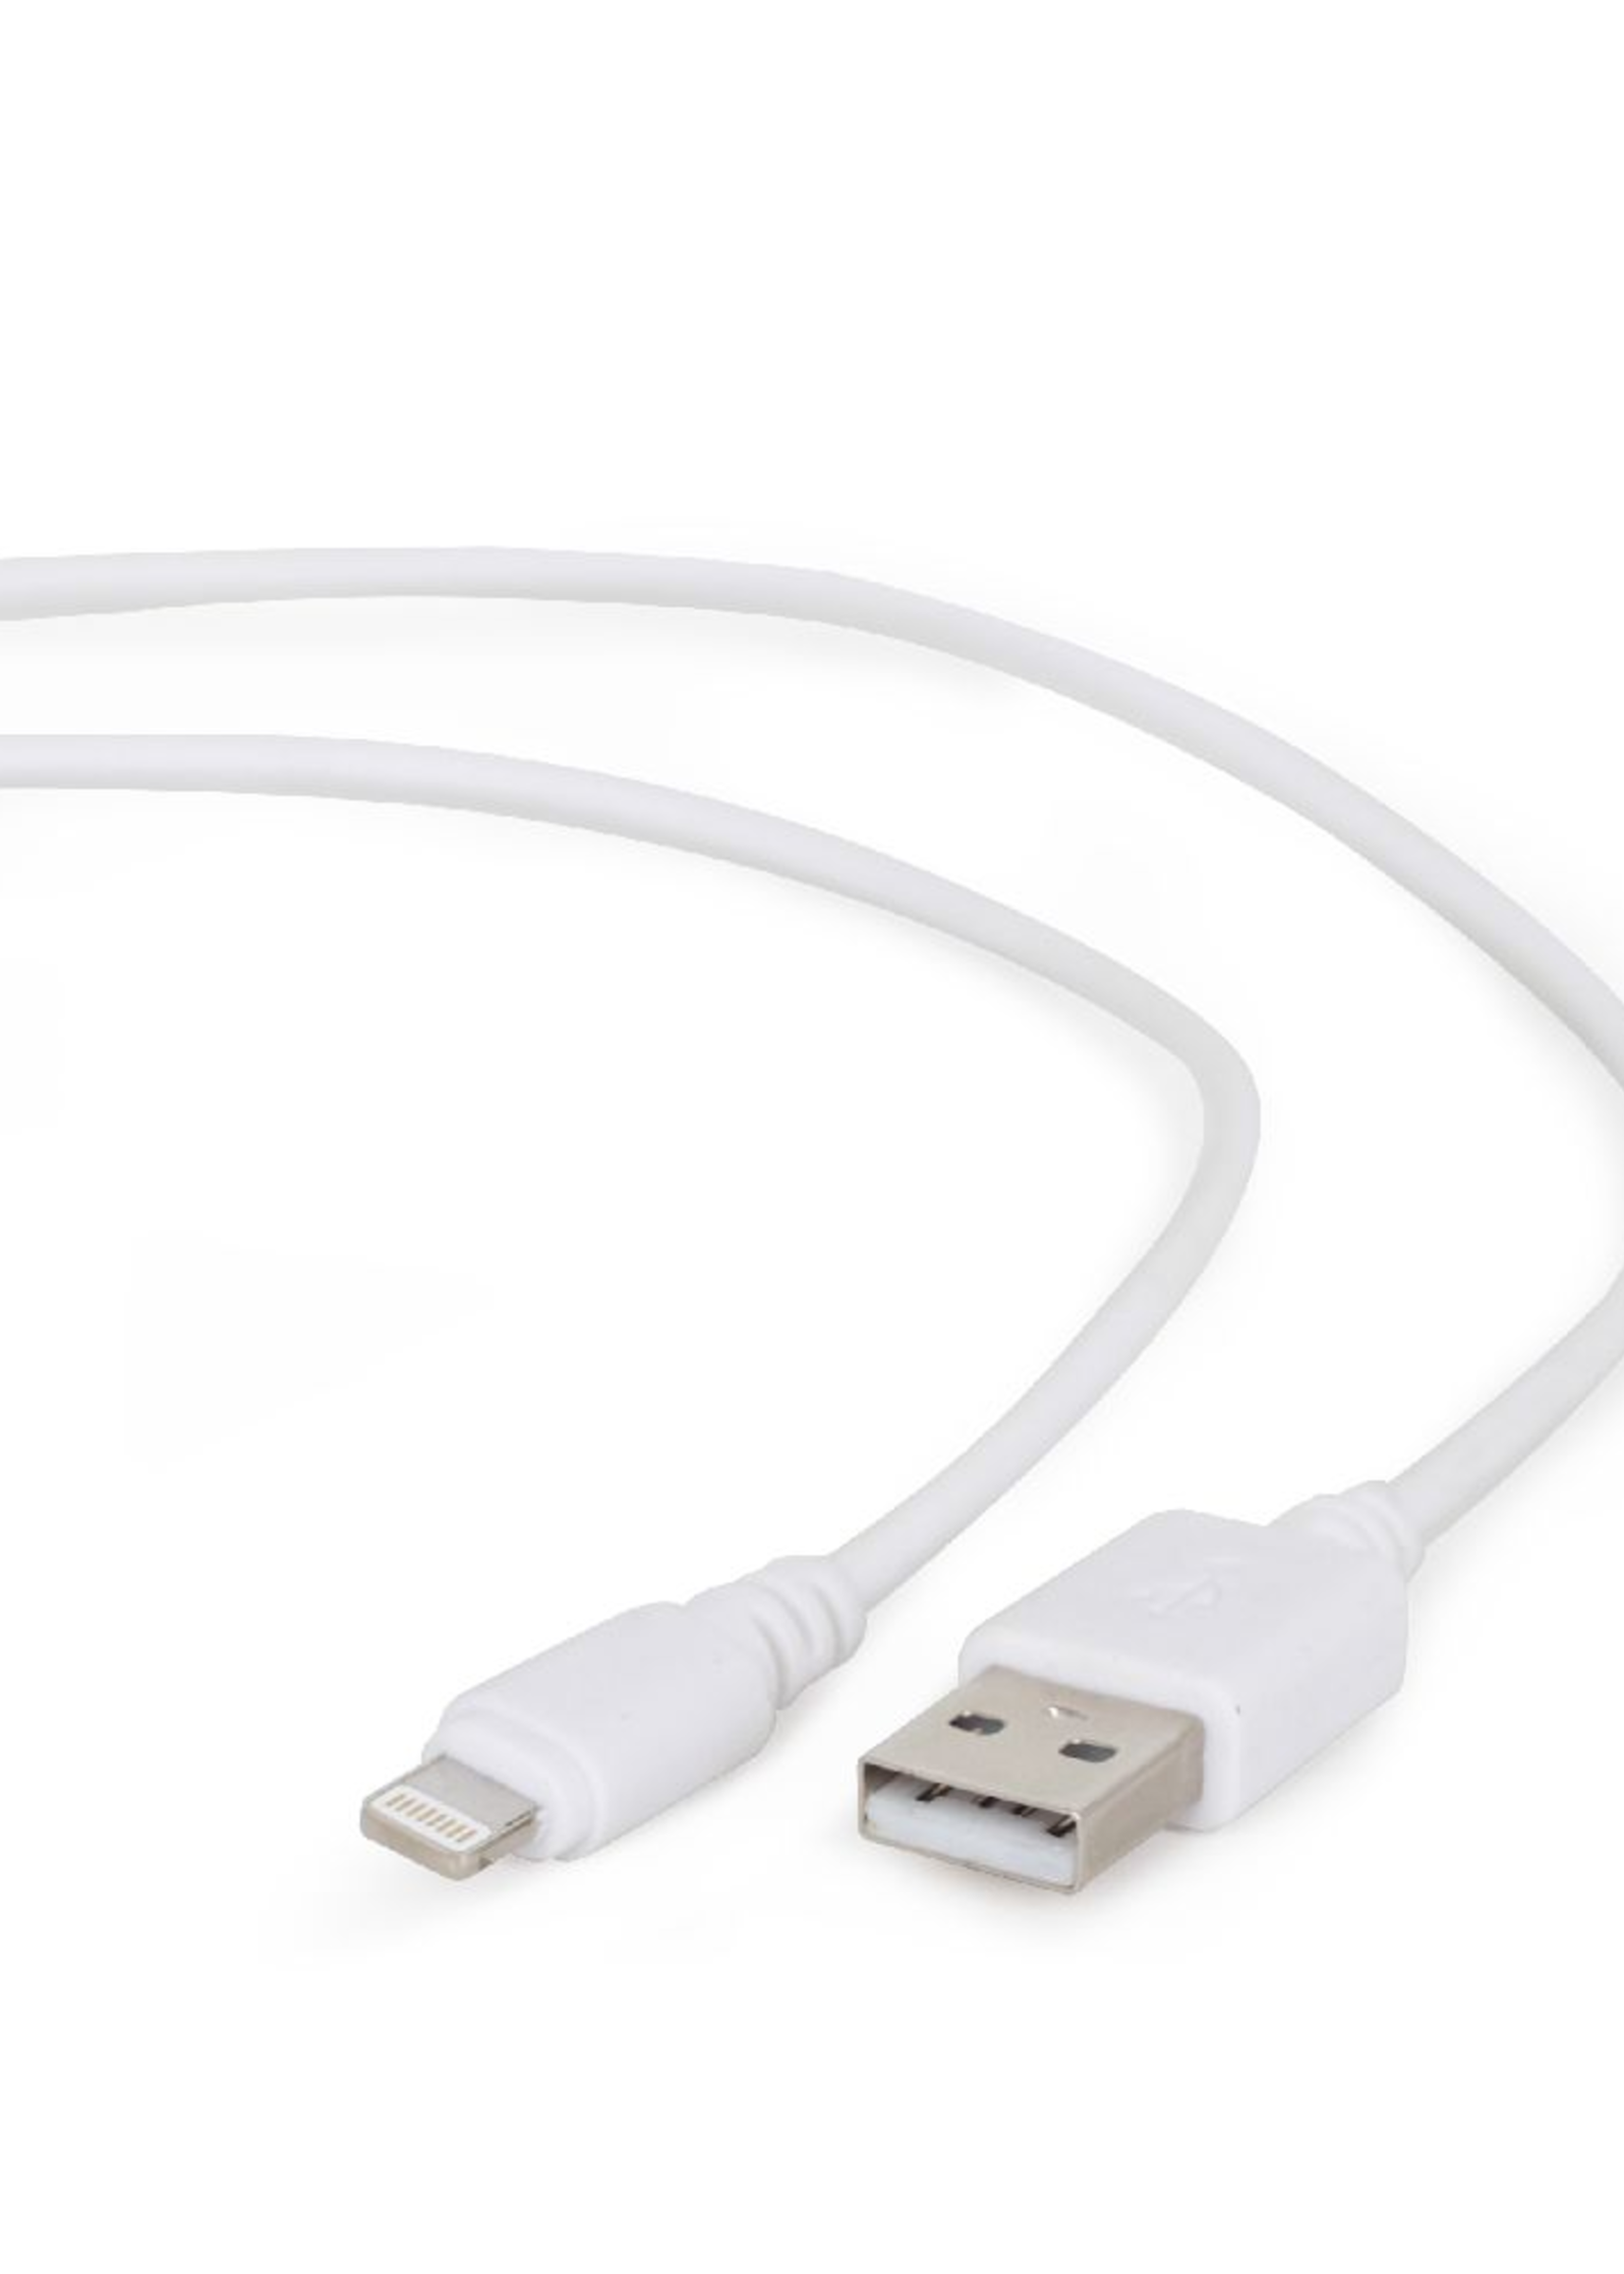 CableXpert USB oplaadkabel wit 0.5 meter